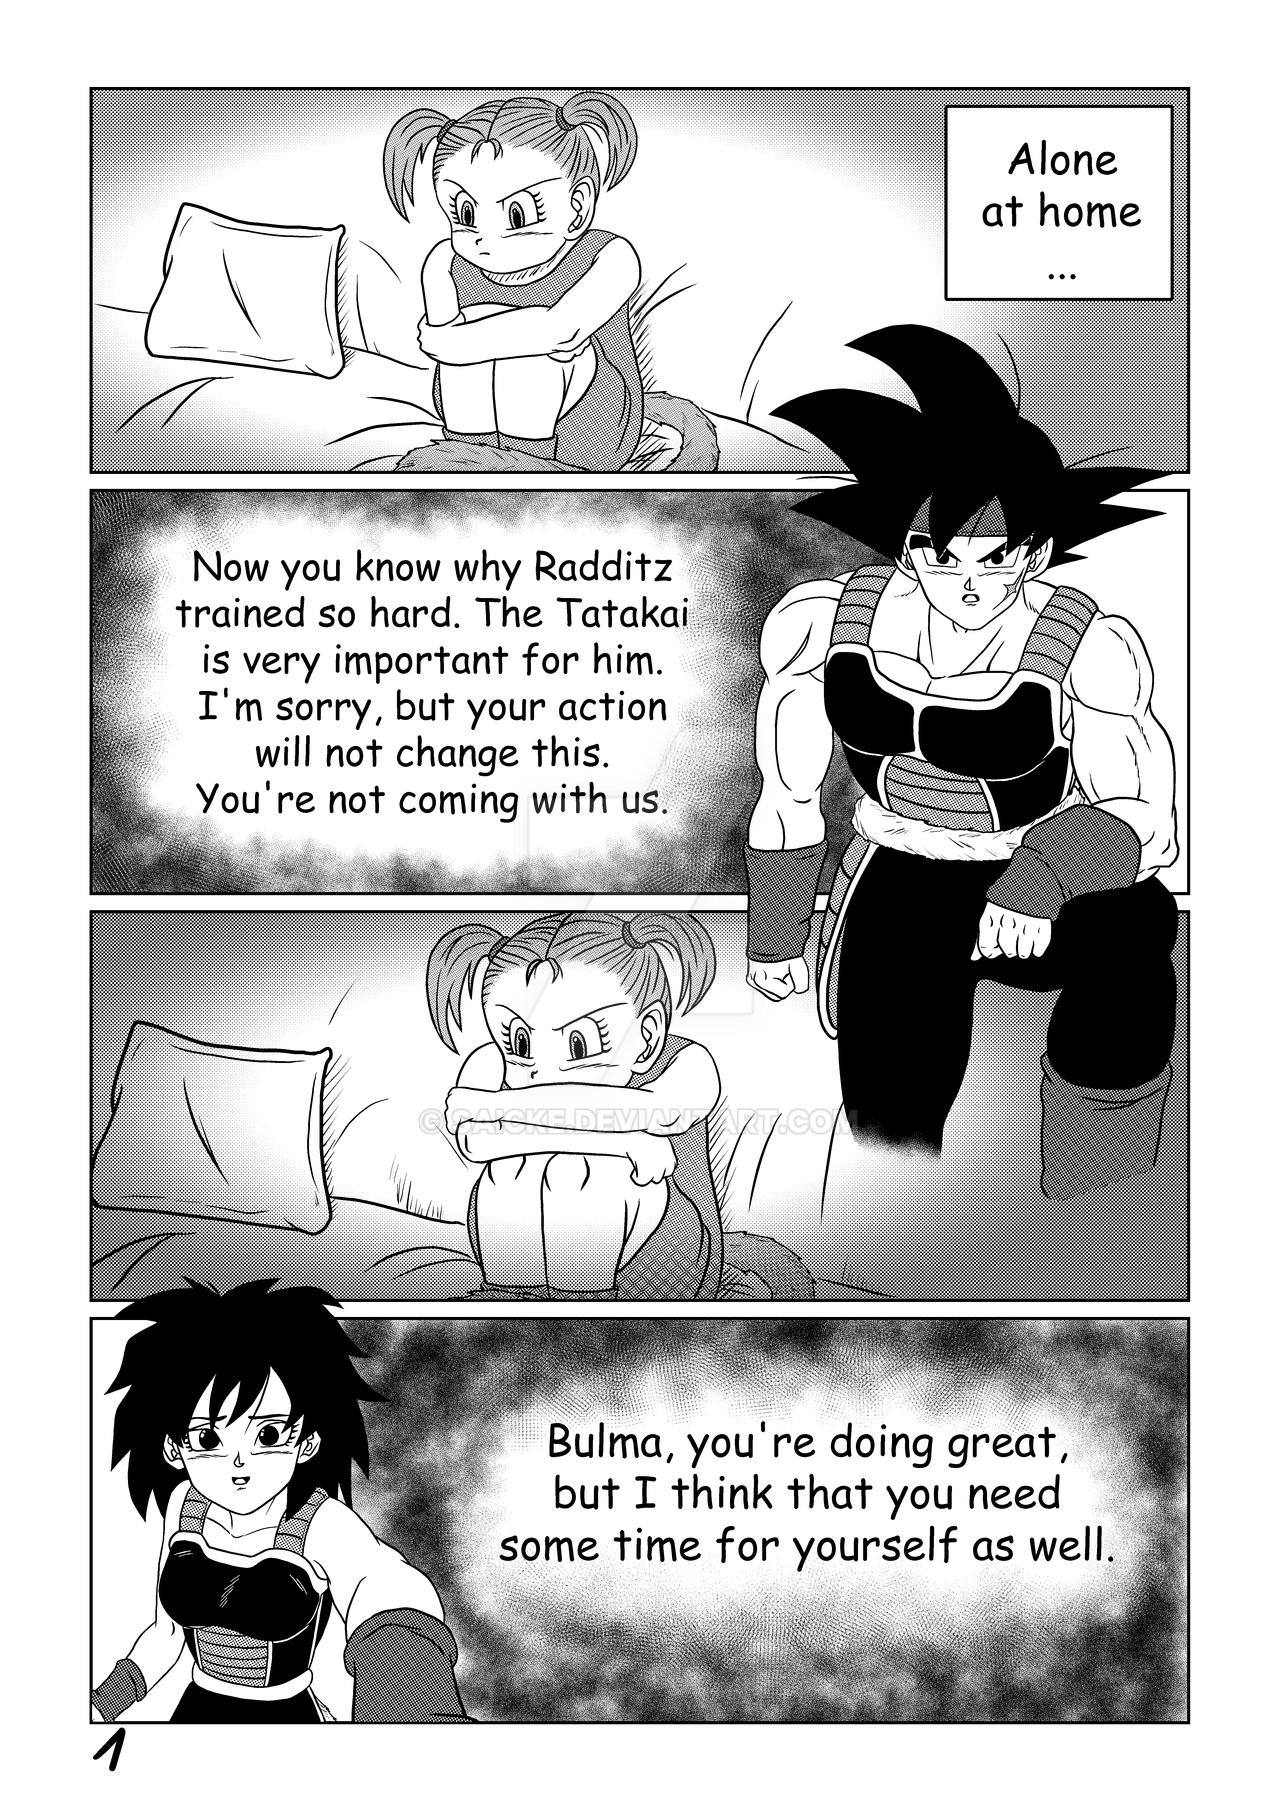 Dragon Ball Super: Bebi Arc Episode 1: Page 5 by KevinBeaver on DeviantArt